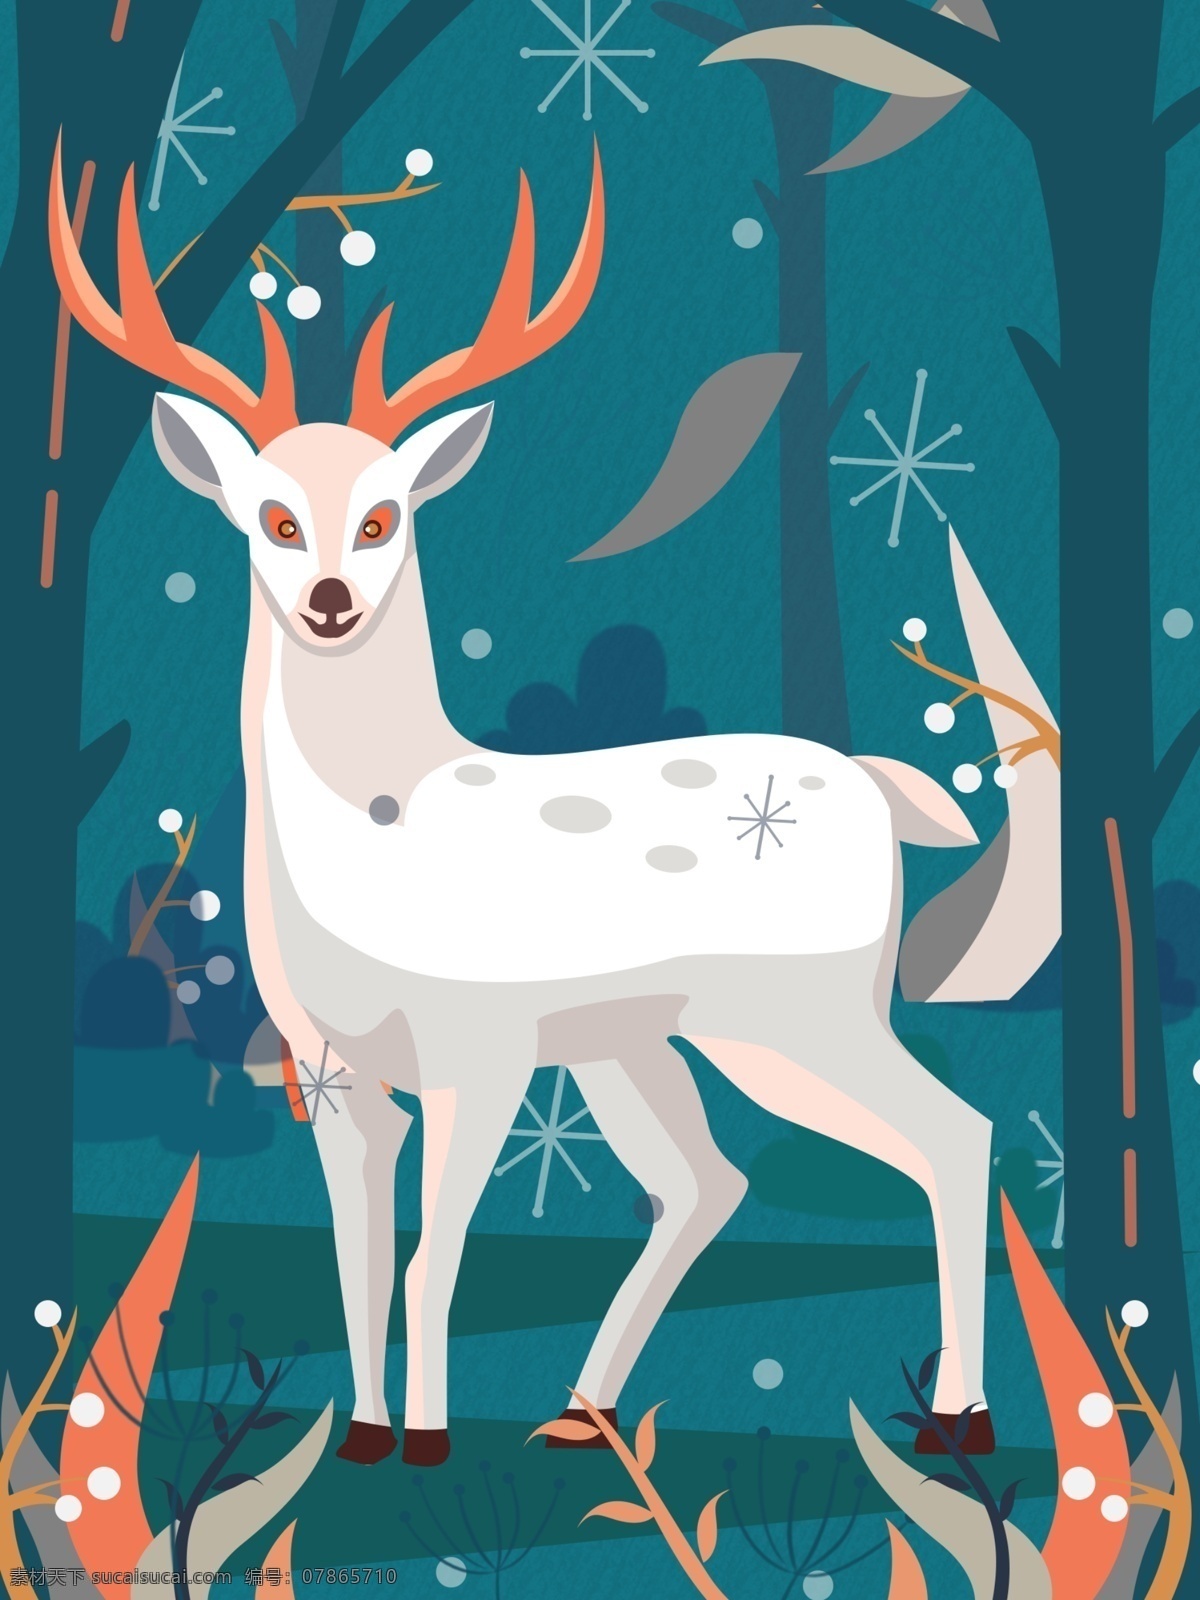 原创 插画 自然 印记 中世纪风格 邮票 植物 动物 鹿 自然灵感 自然印记